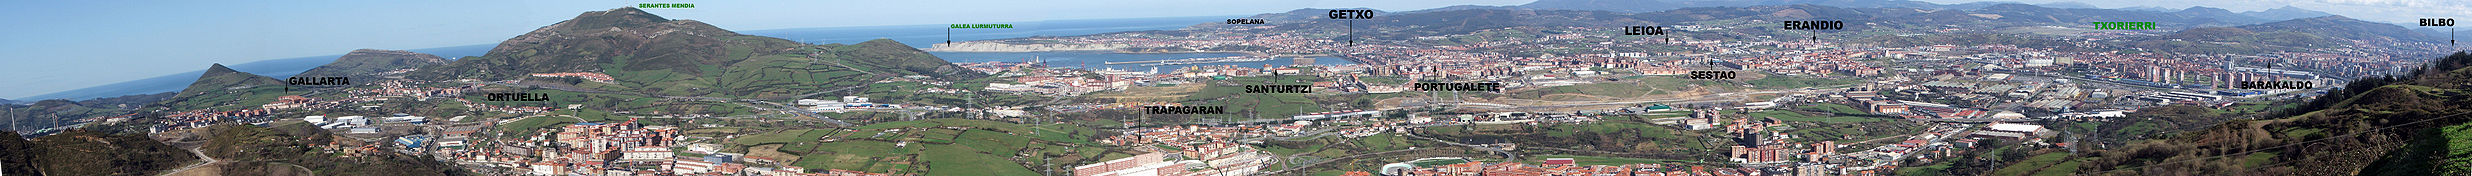 Vista del Bilbao metropolitano desde los Montes de Triano.